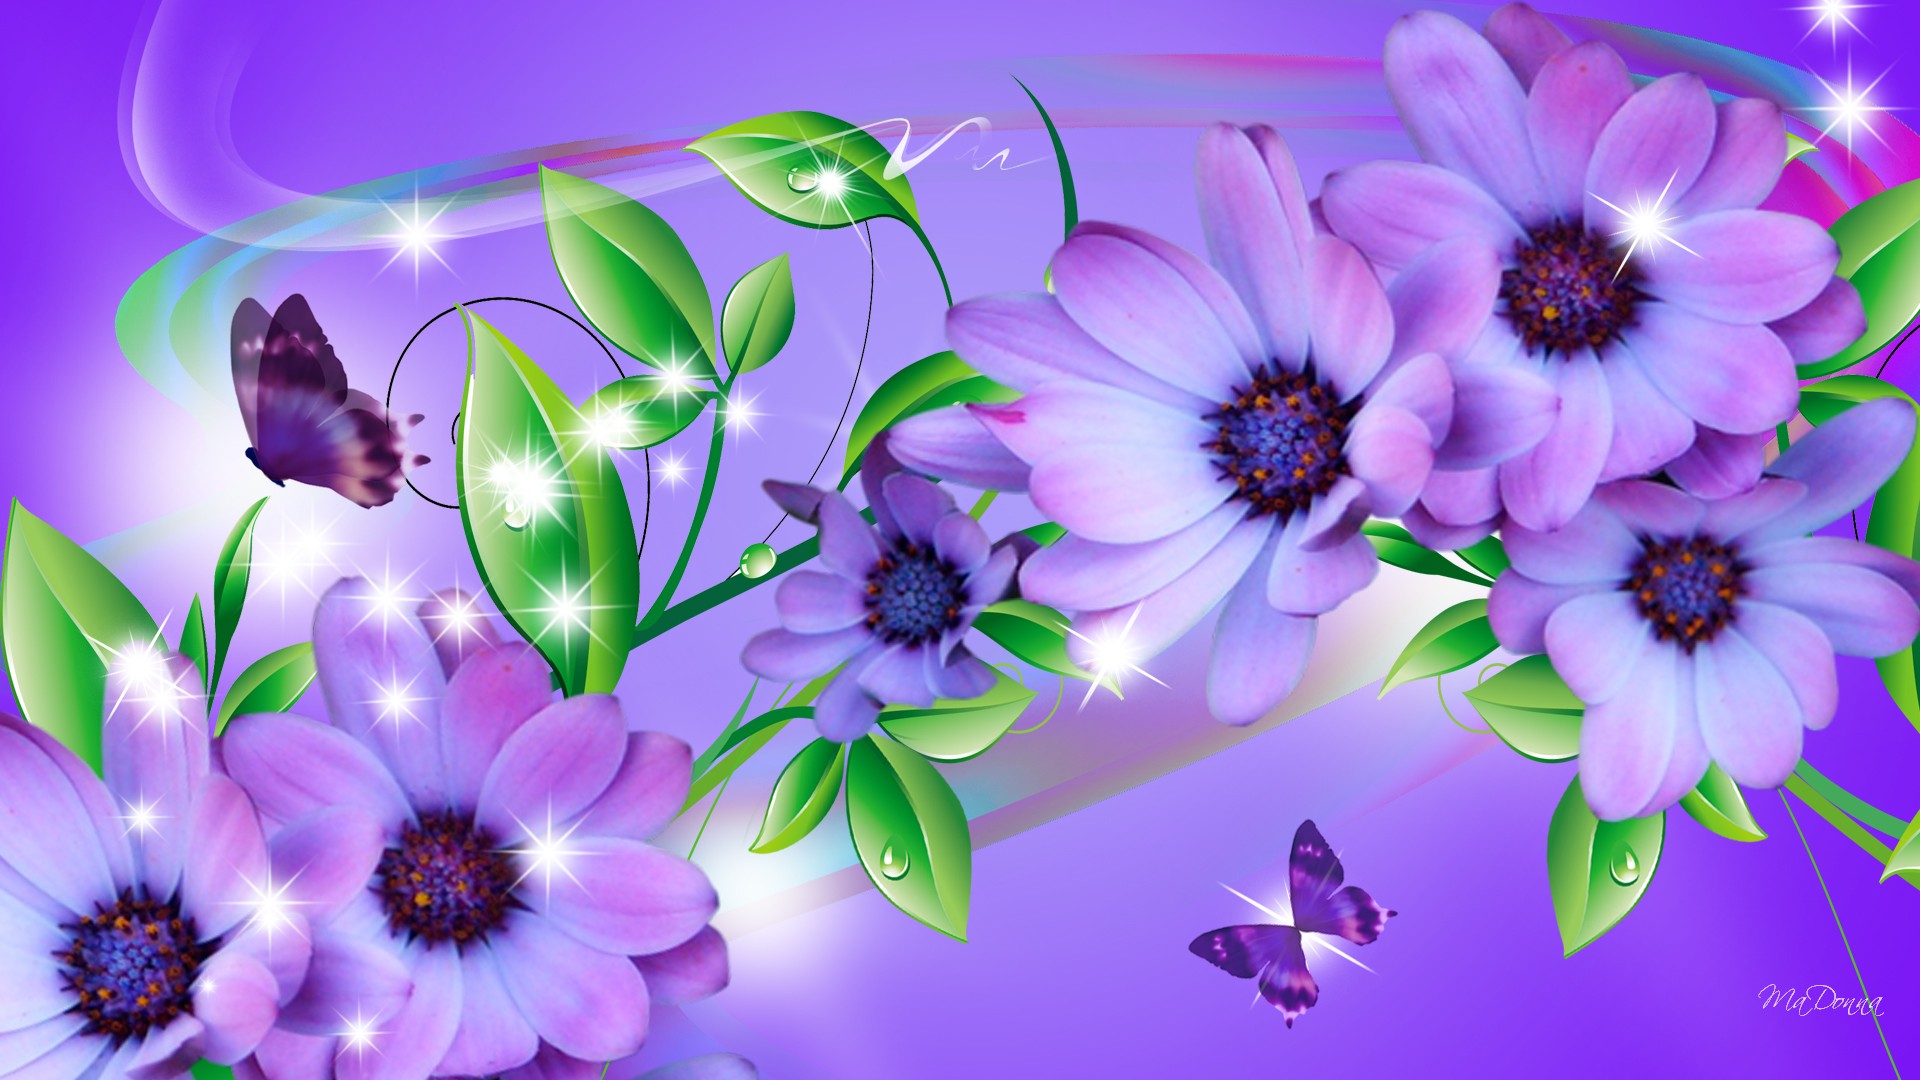 butterfly, purple, daisy, flowers, flower, leaf, artistic